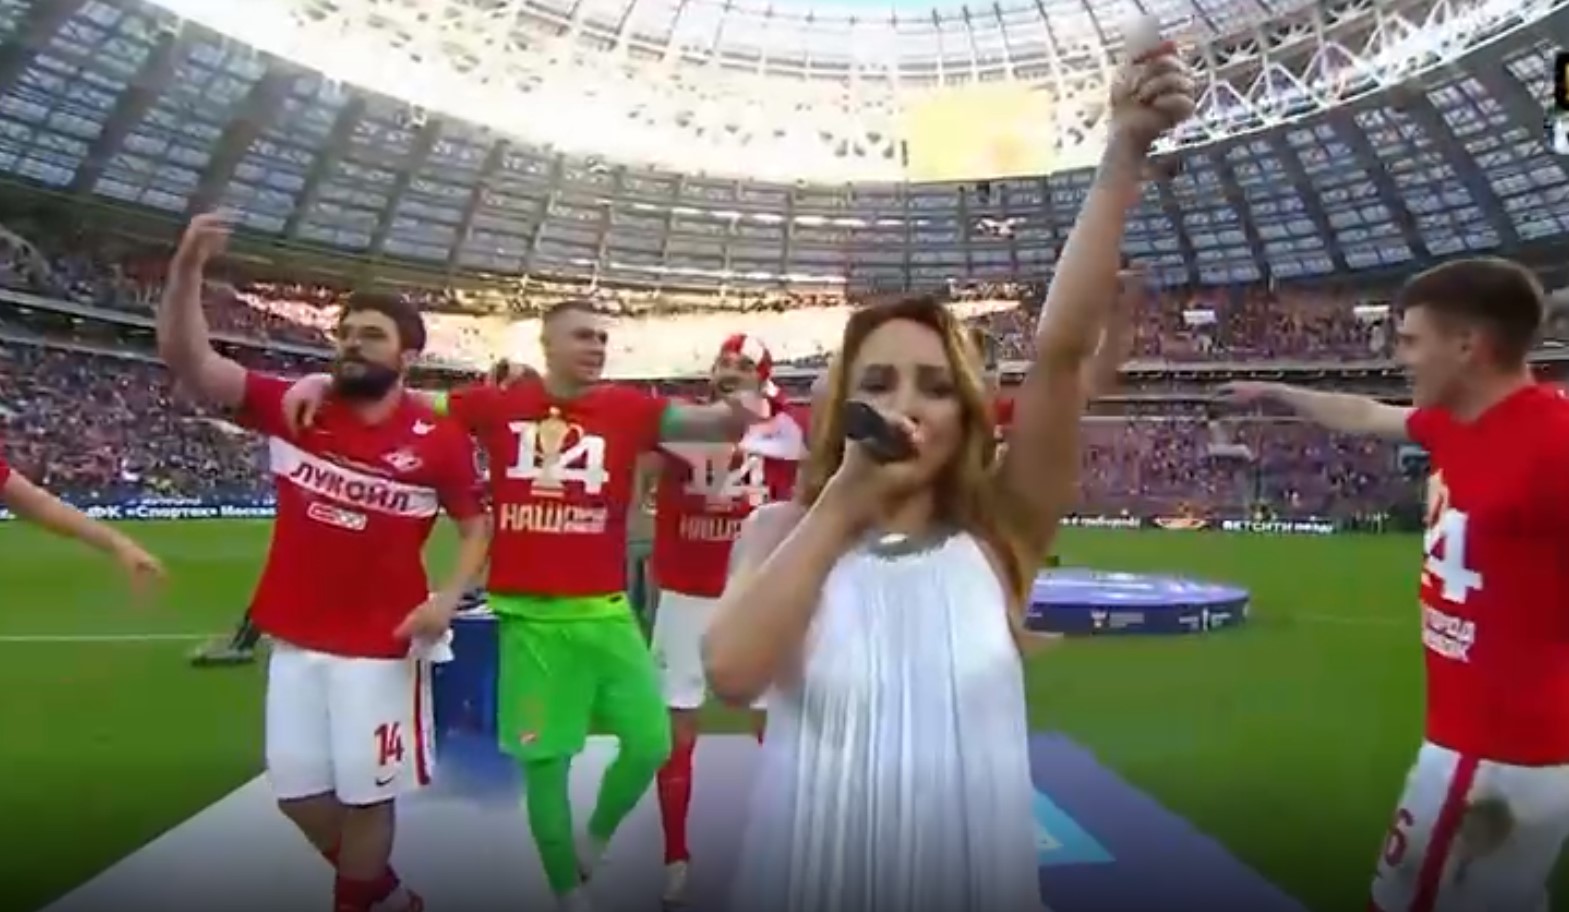 Певица МакSим на Кубке России спела с 70-тысячной толпой «Знаешь ли ты», видео с хитом взорвало Сеть